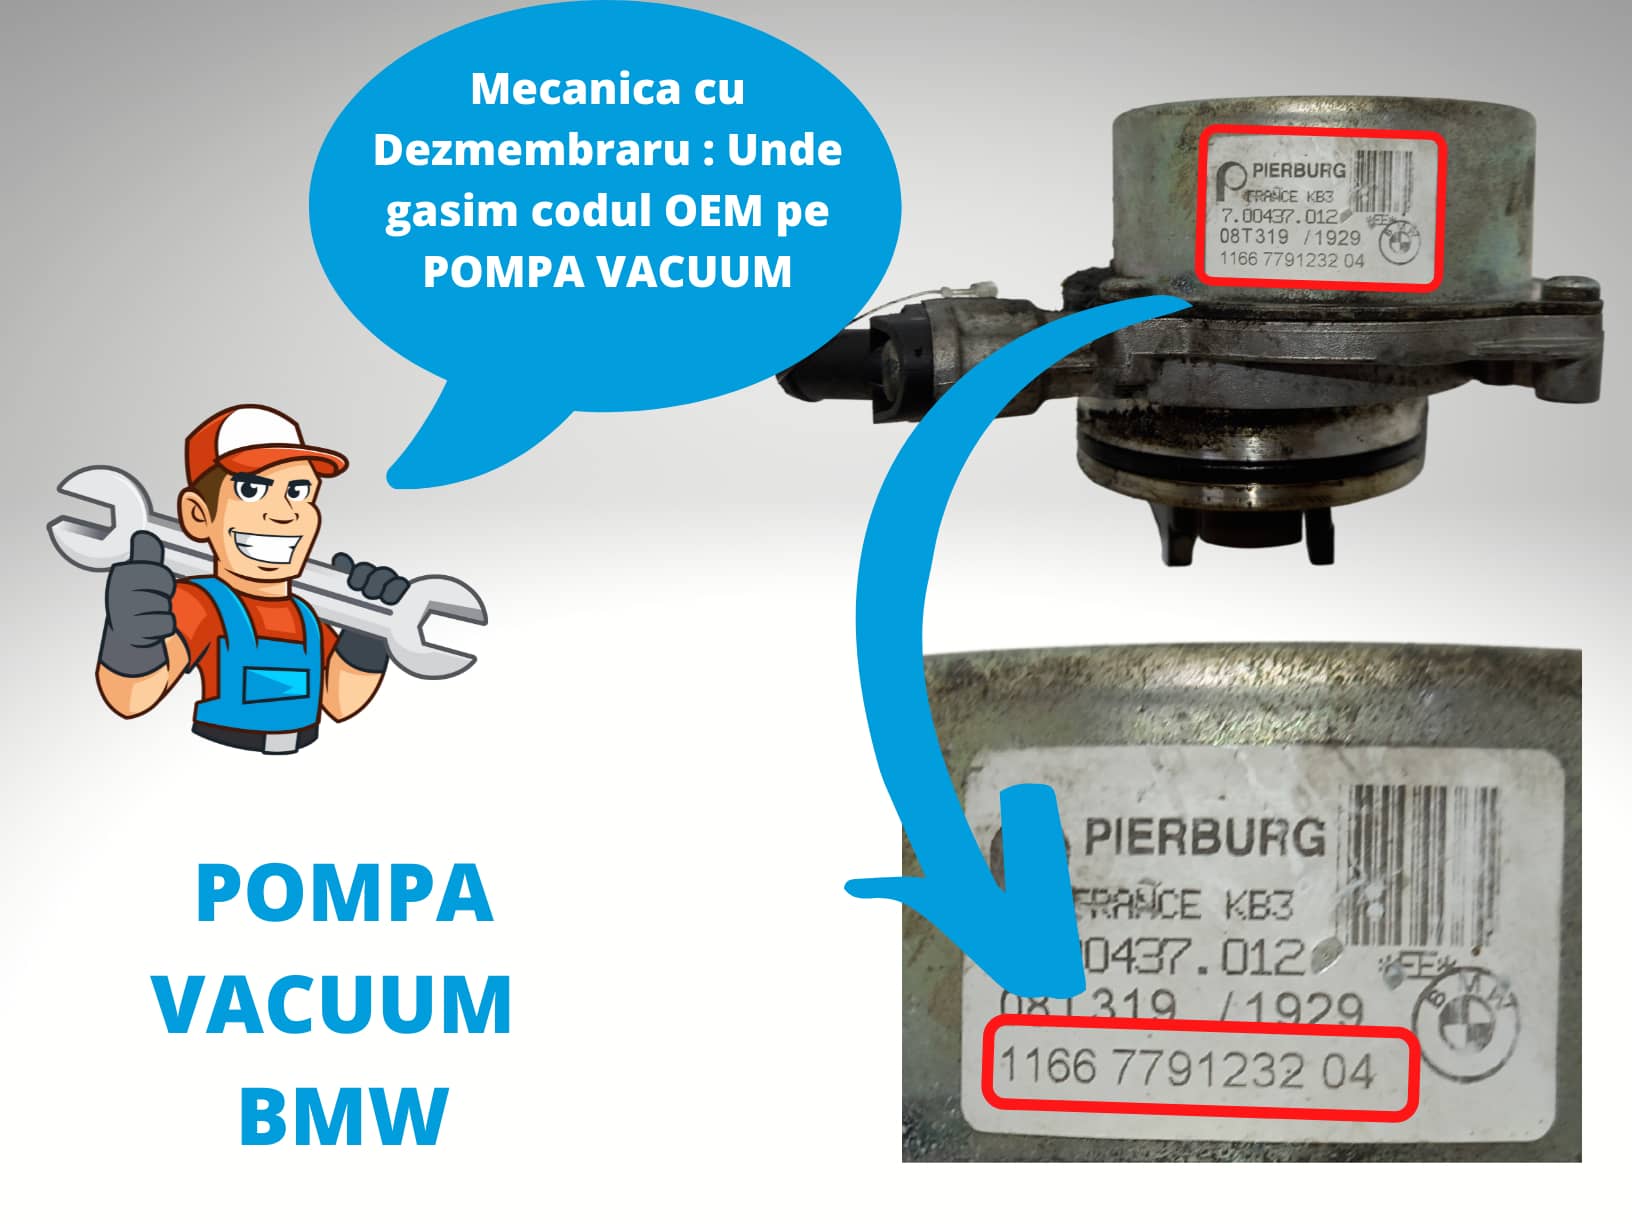 Pompa Vacuum BMW